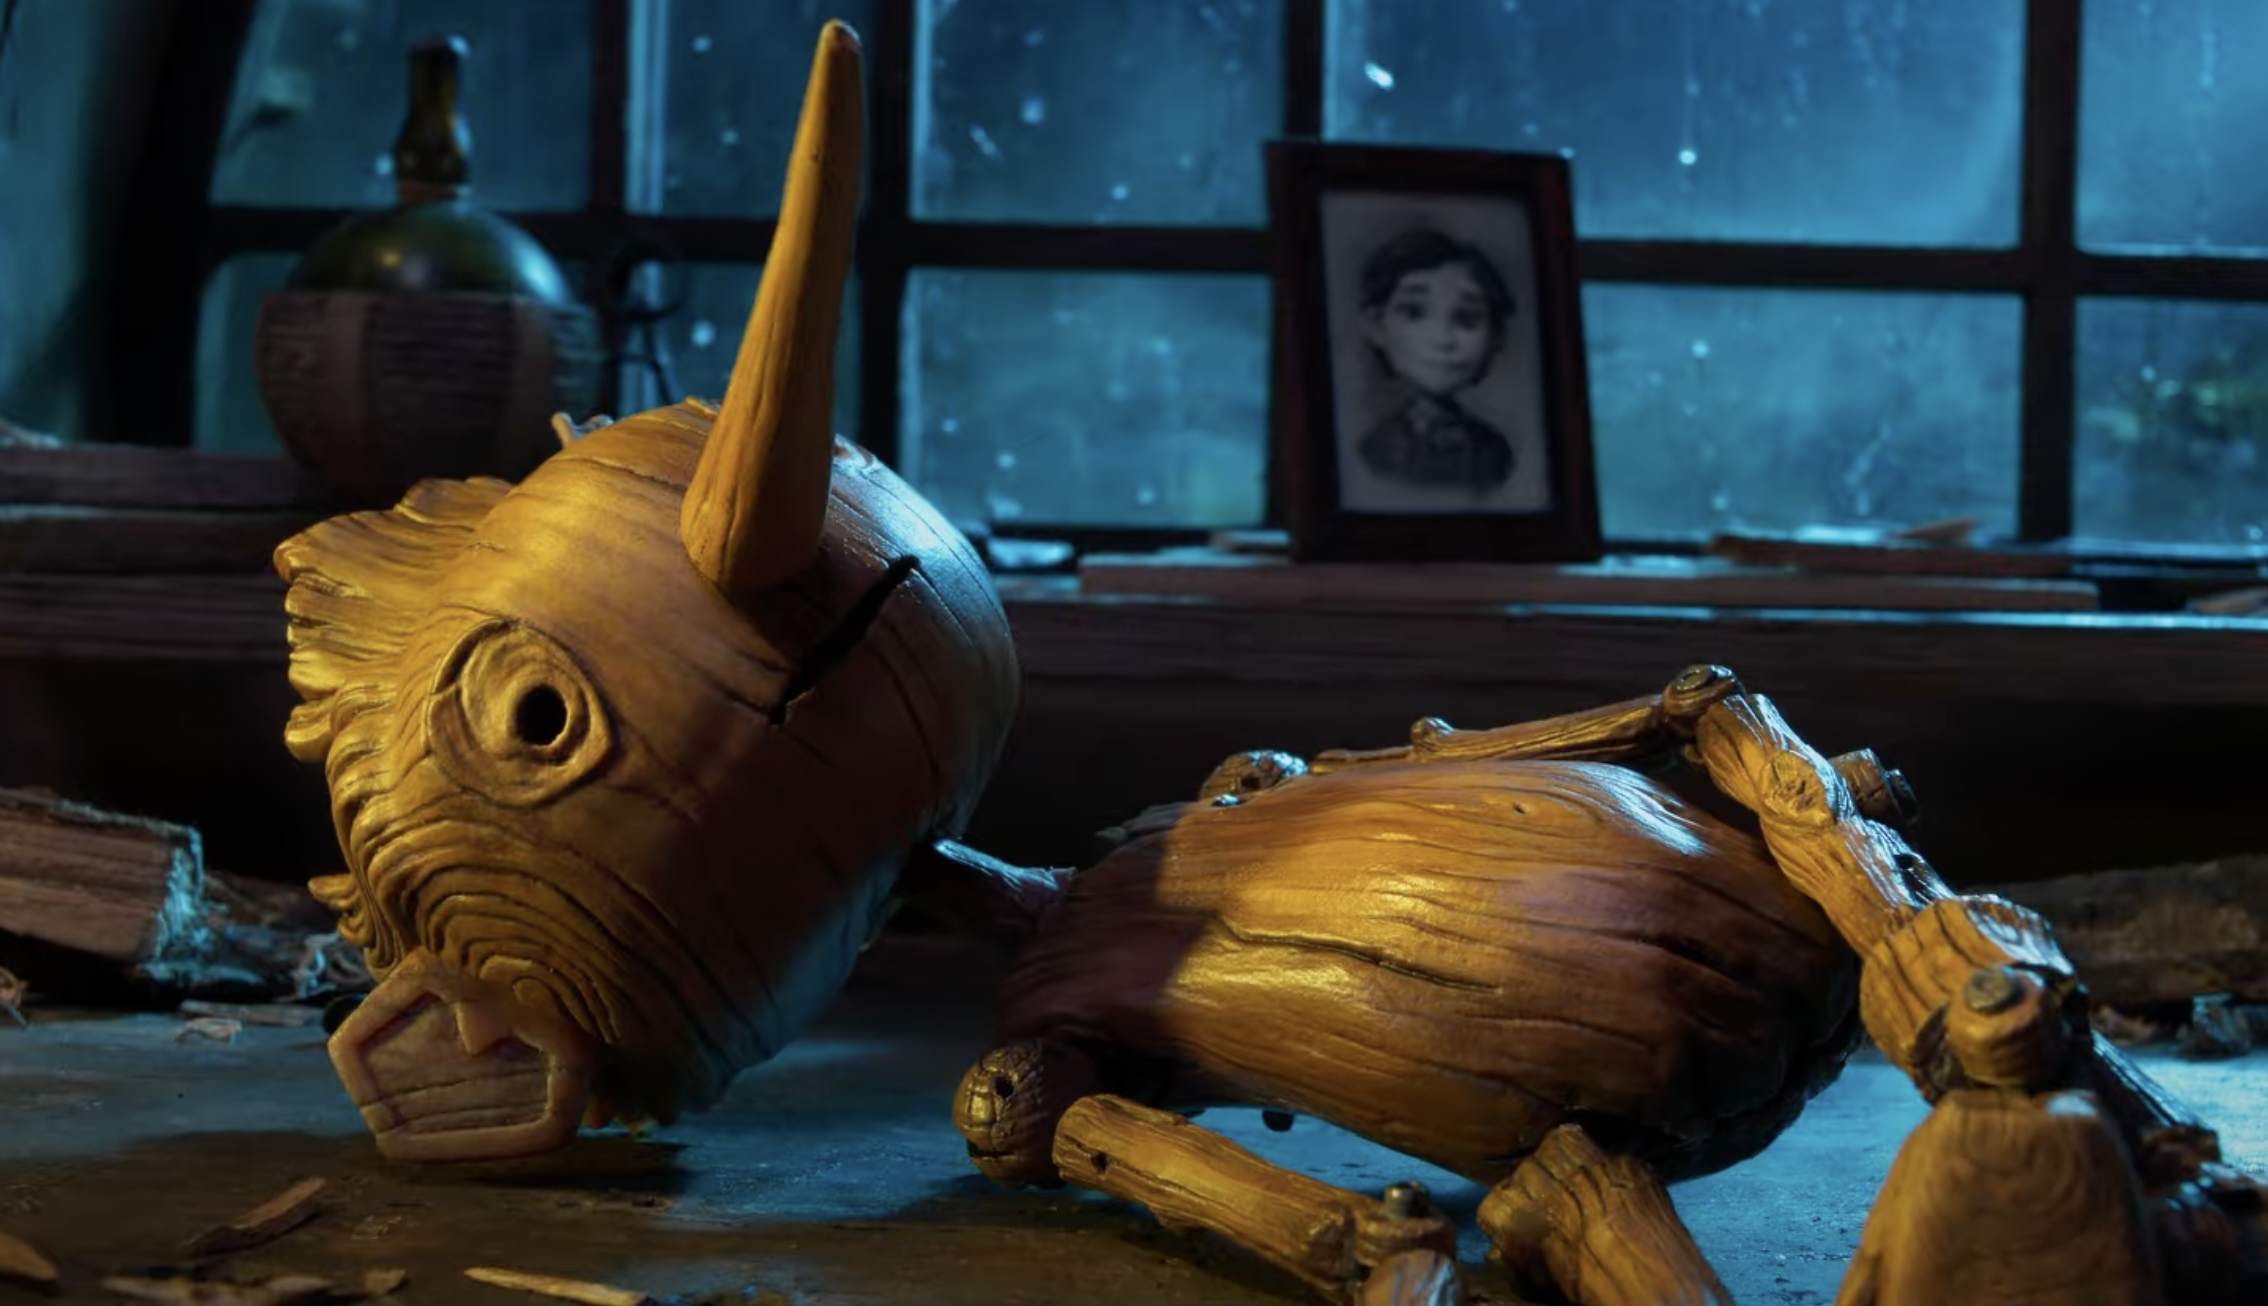 Bland tips på nya filmer på Netflix – senaste nytt att streama hittar vi "Pinocchio" av Guillermo del Toro.